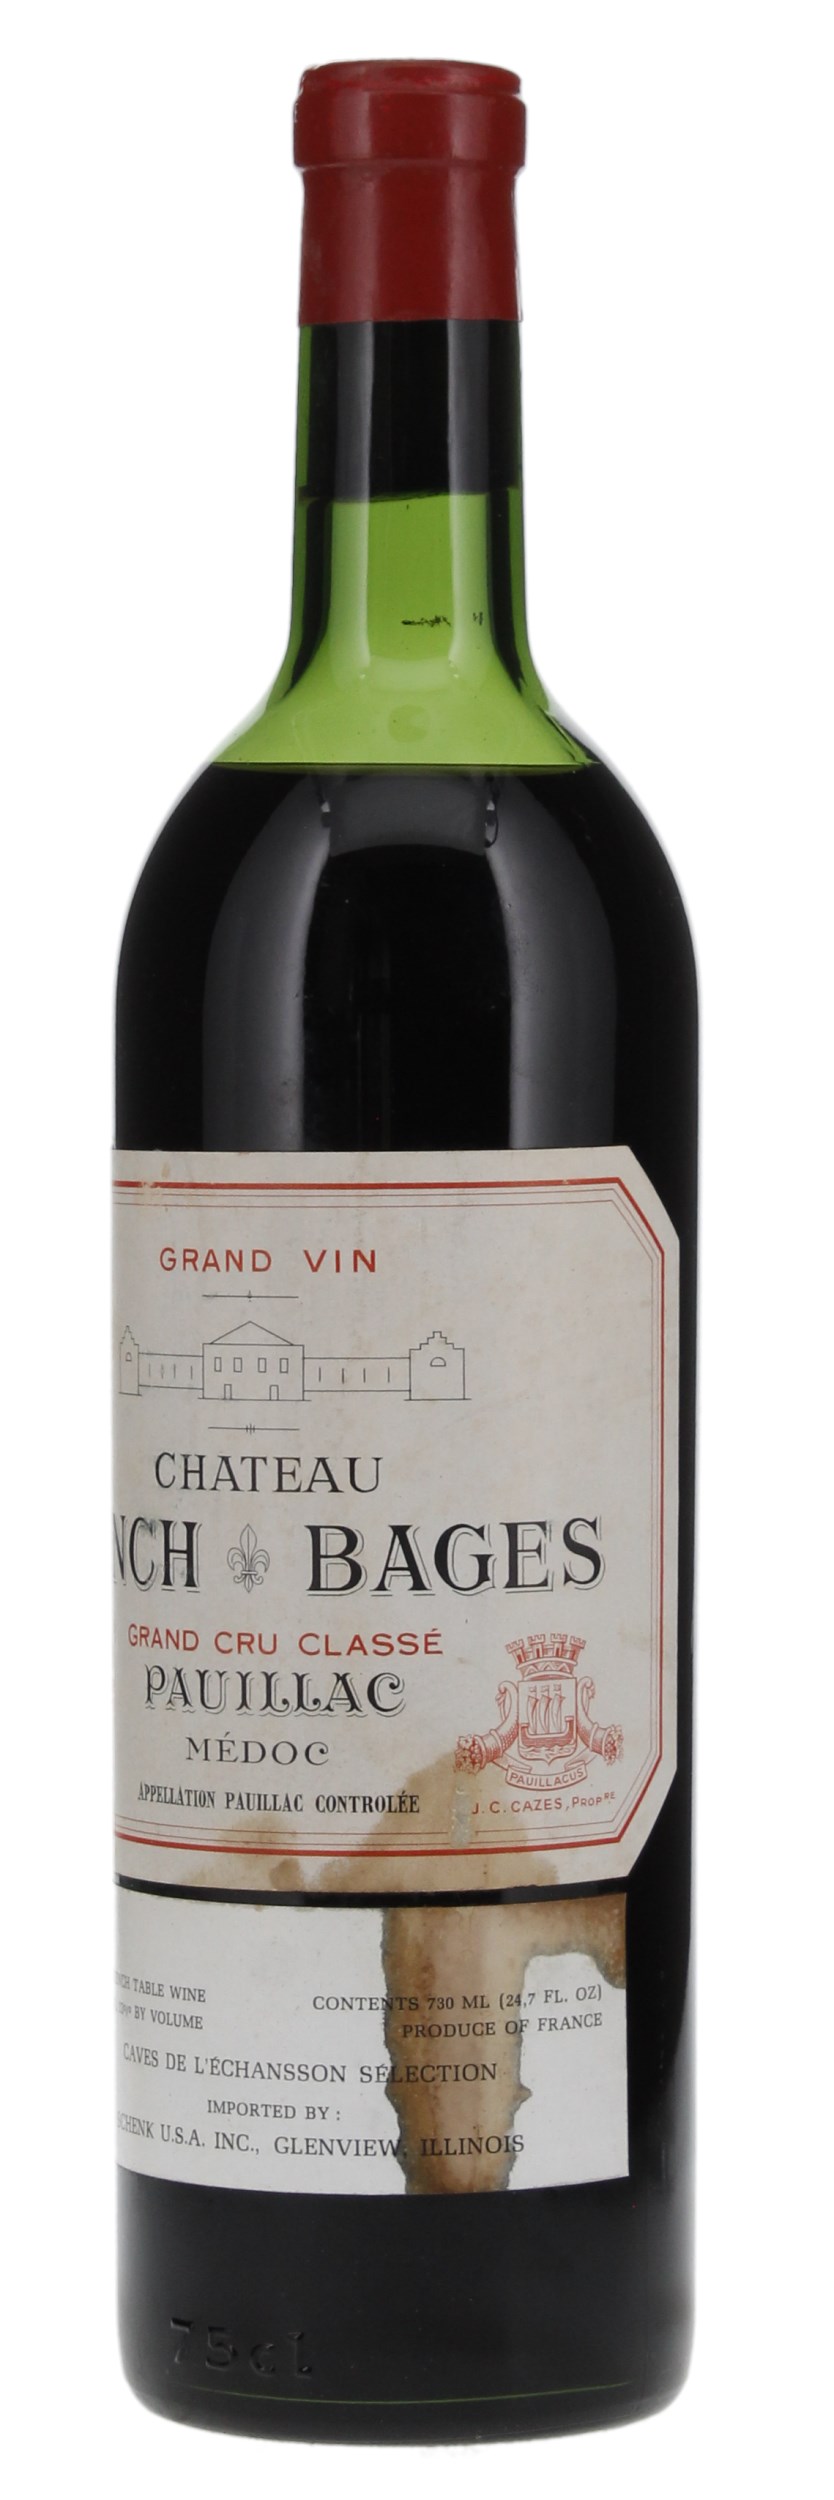 1961 Château Lynch-Bages, 750ml